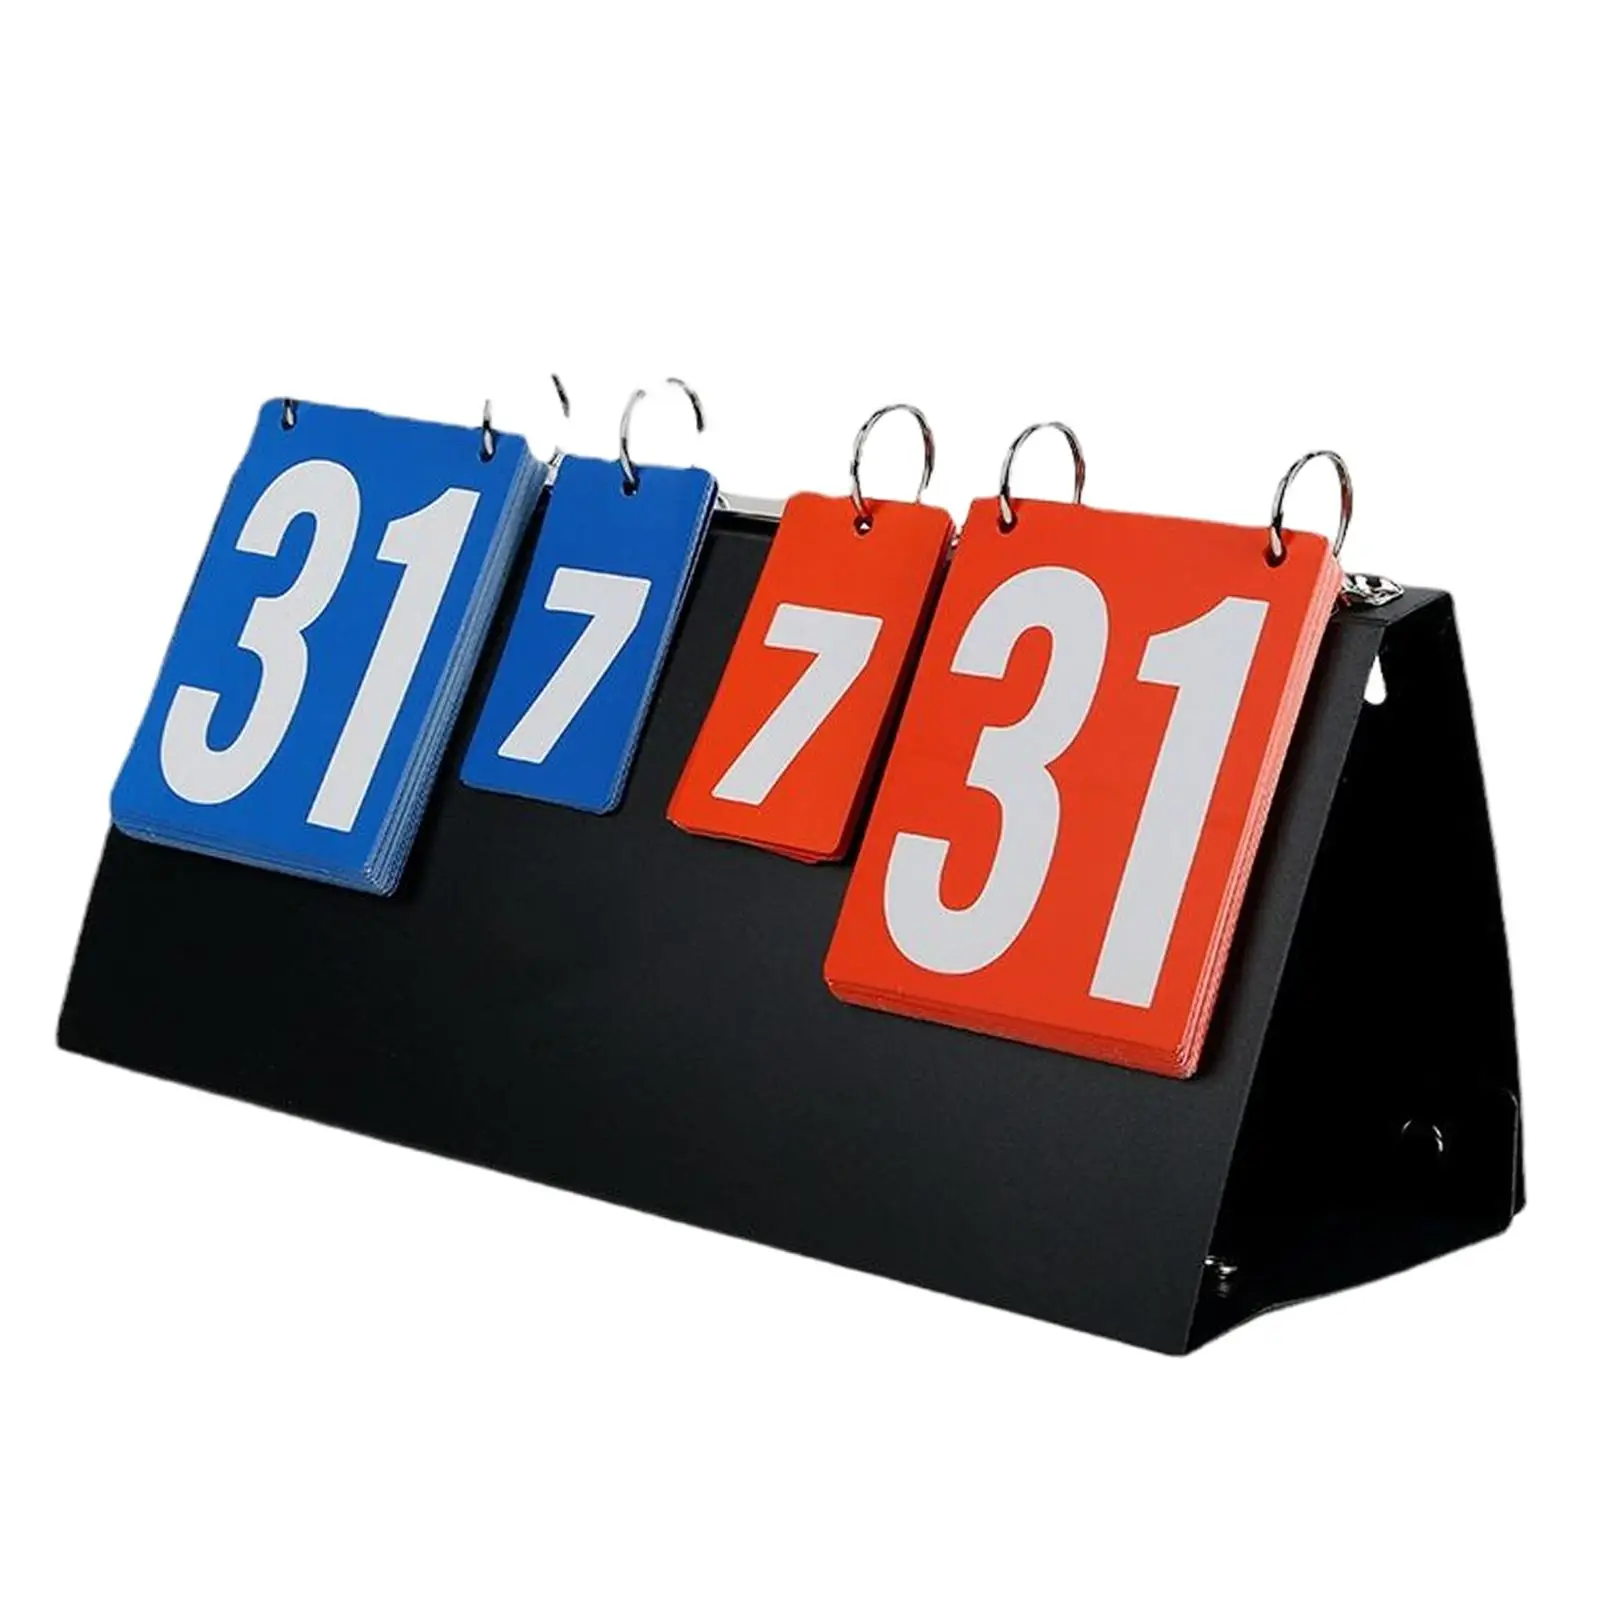 4 digits Score Board Score Keeper Competition Tabletop Scoreboard for Basketball